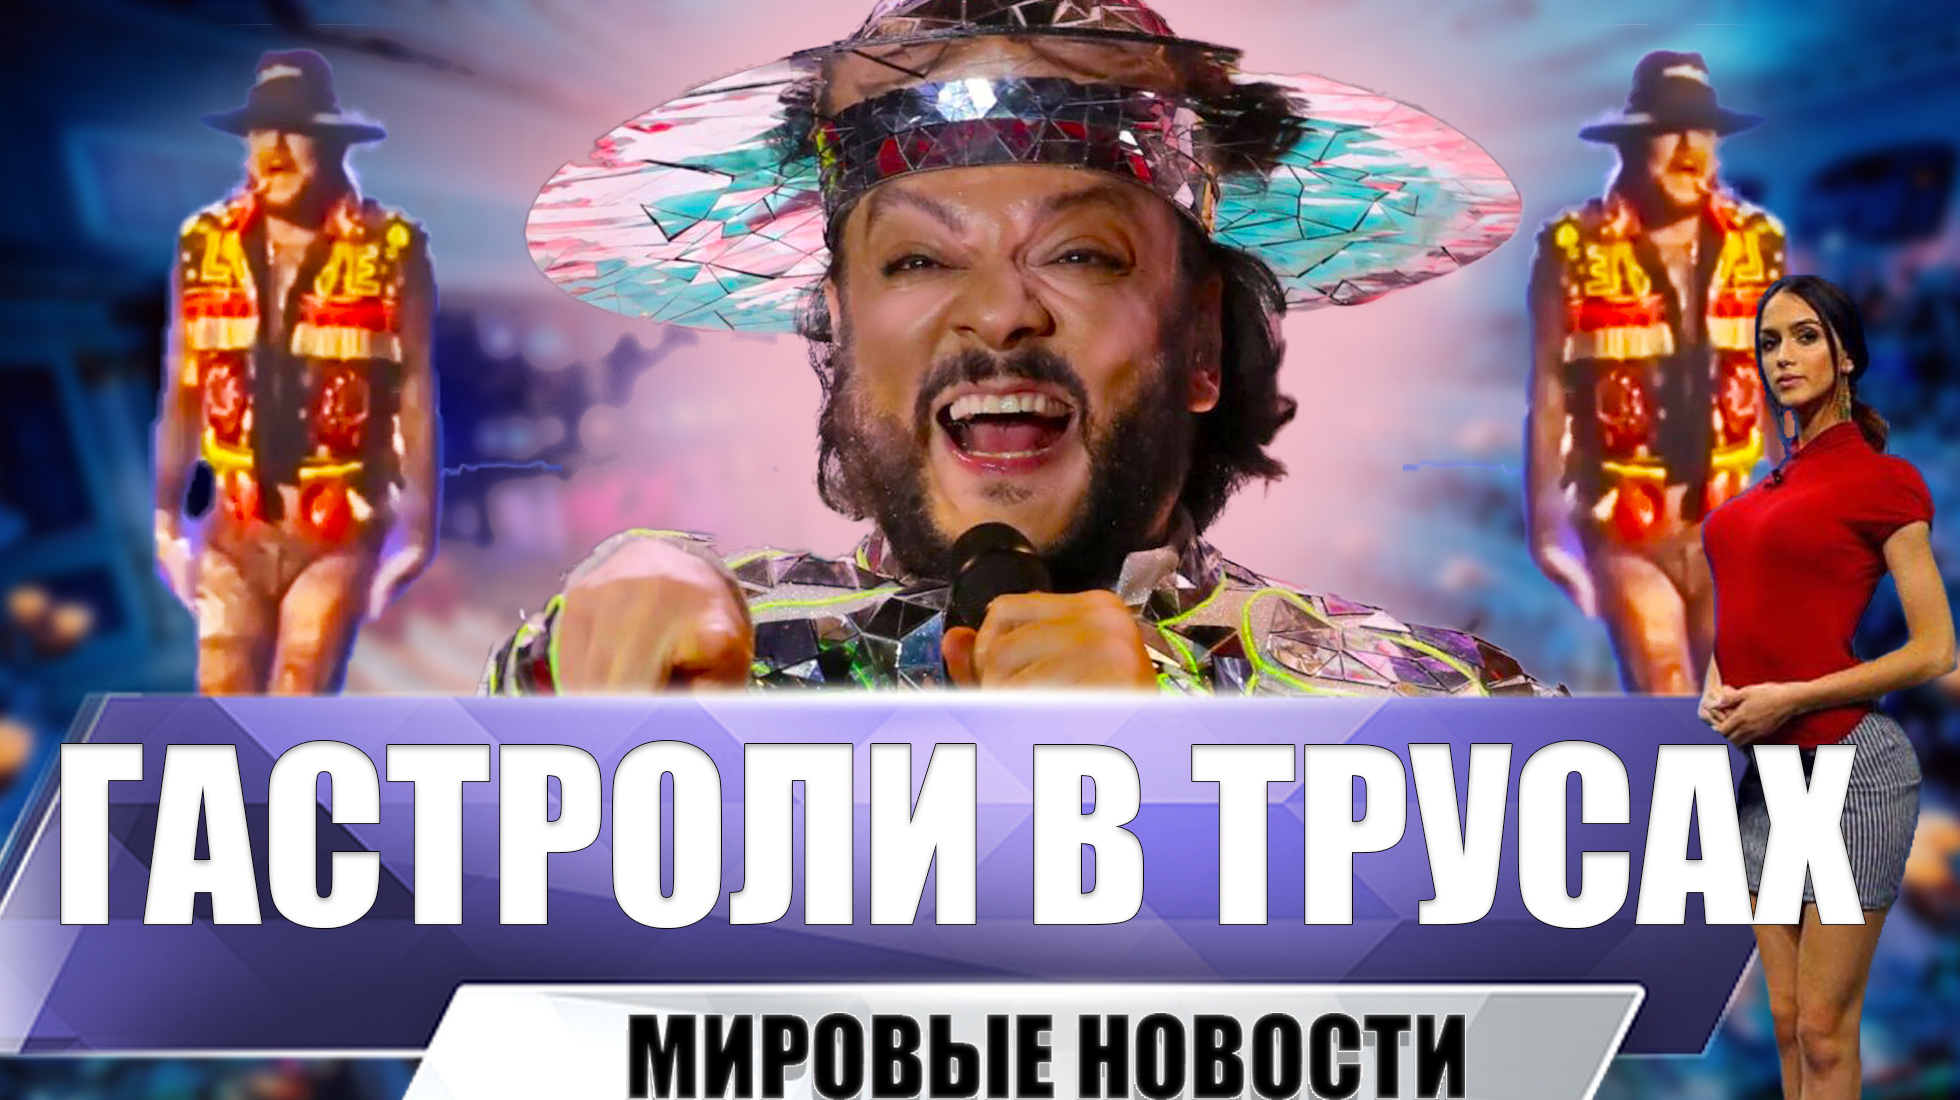 выступление киркорова в казахстане в прозрачных колготках